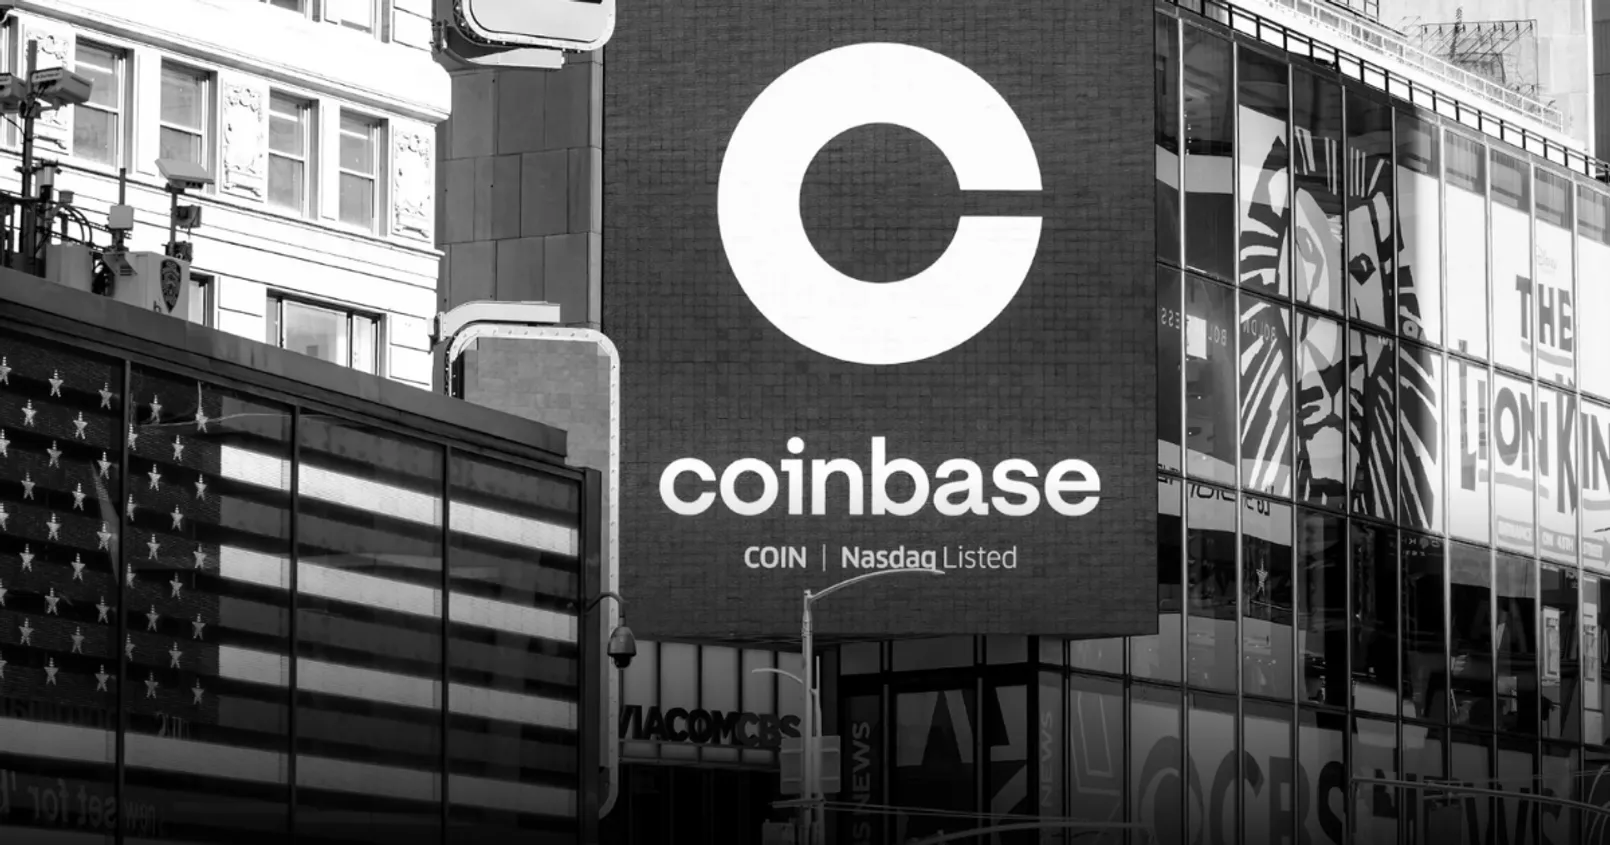 เคลียร์ประเด็น Coinbase! หลังมีผู้อ้างว่าแพลตฟอร์มจำกัดการโอน Bitcoin